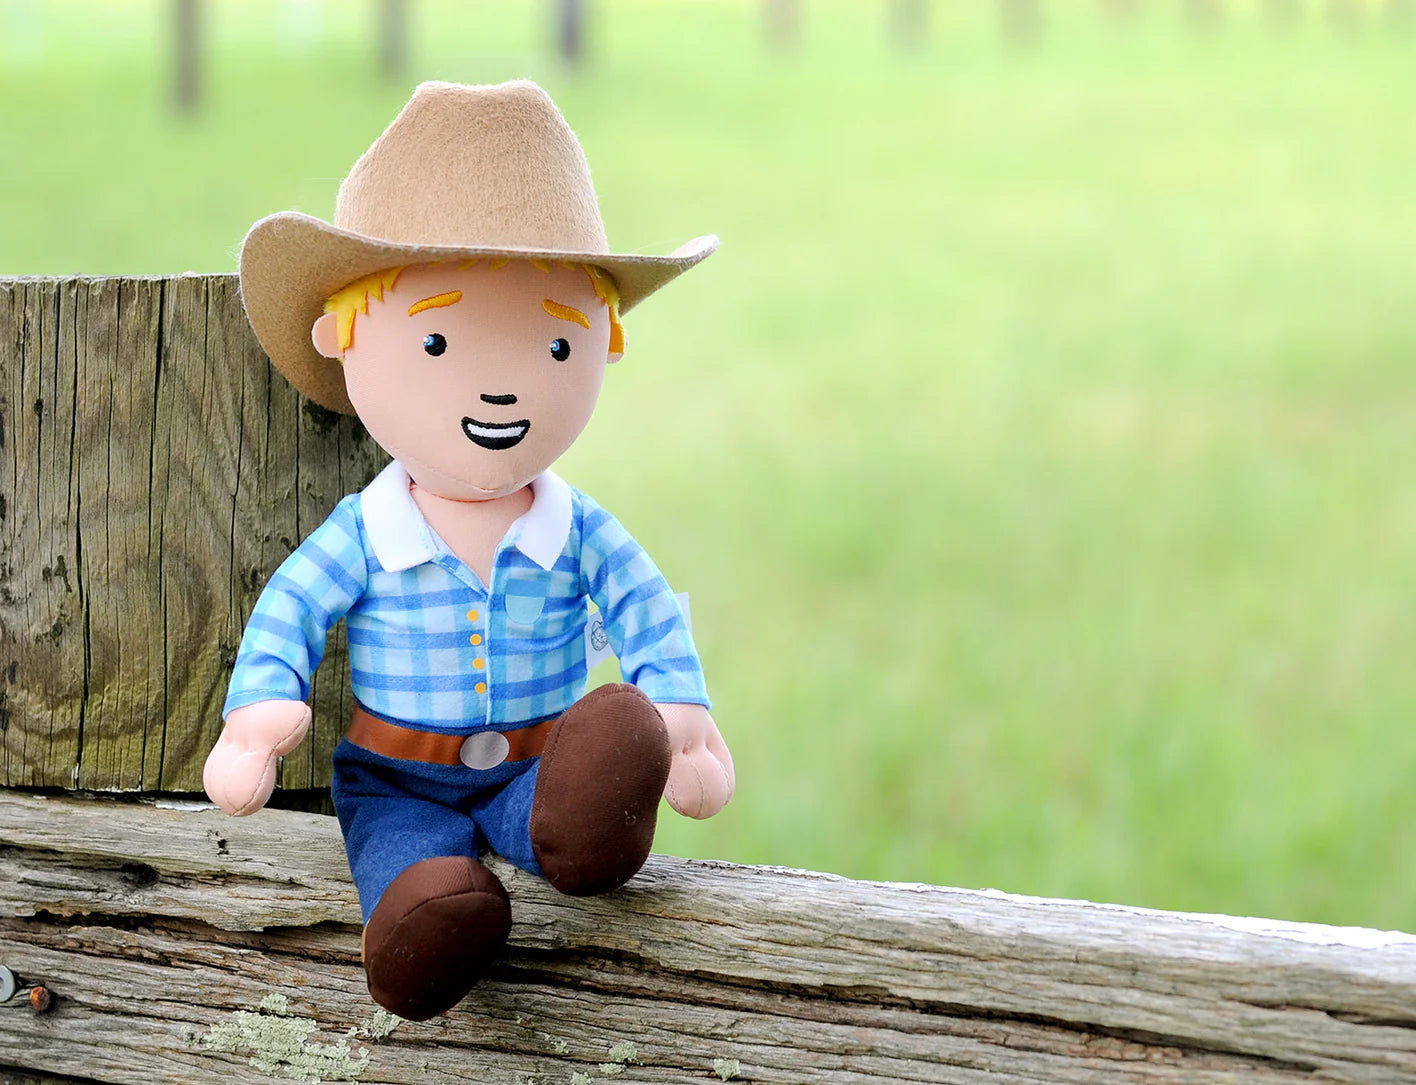 George the Farmer Cuddle Doll- George